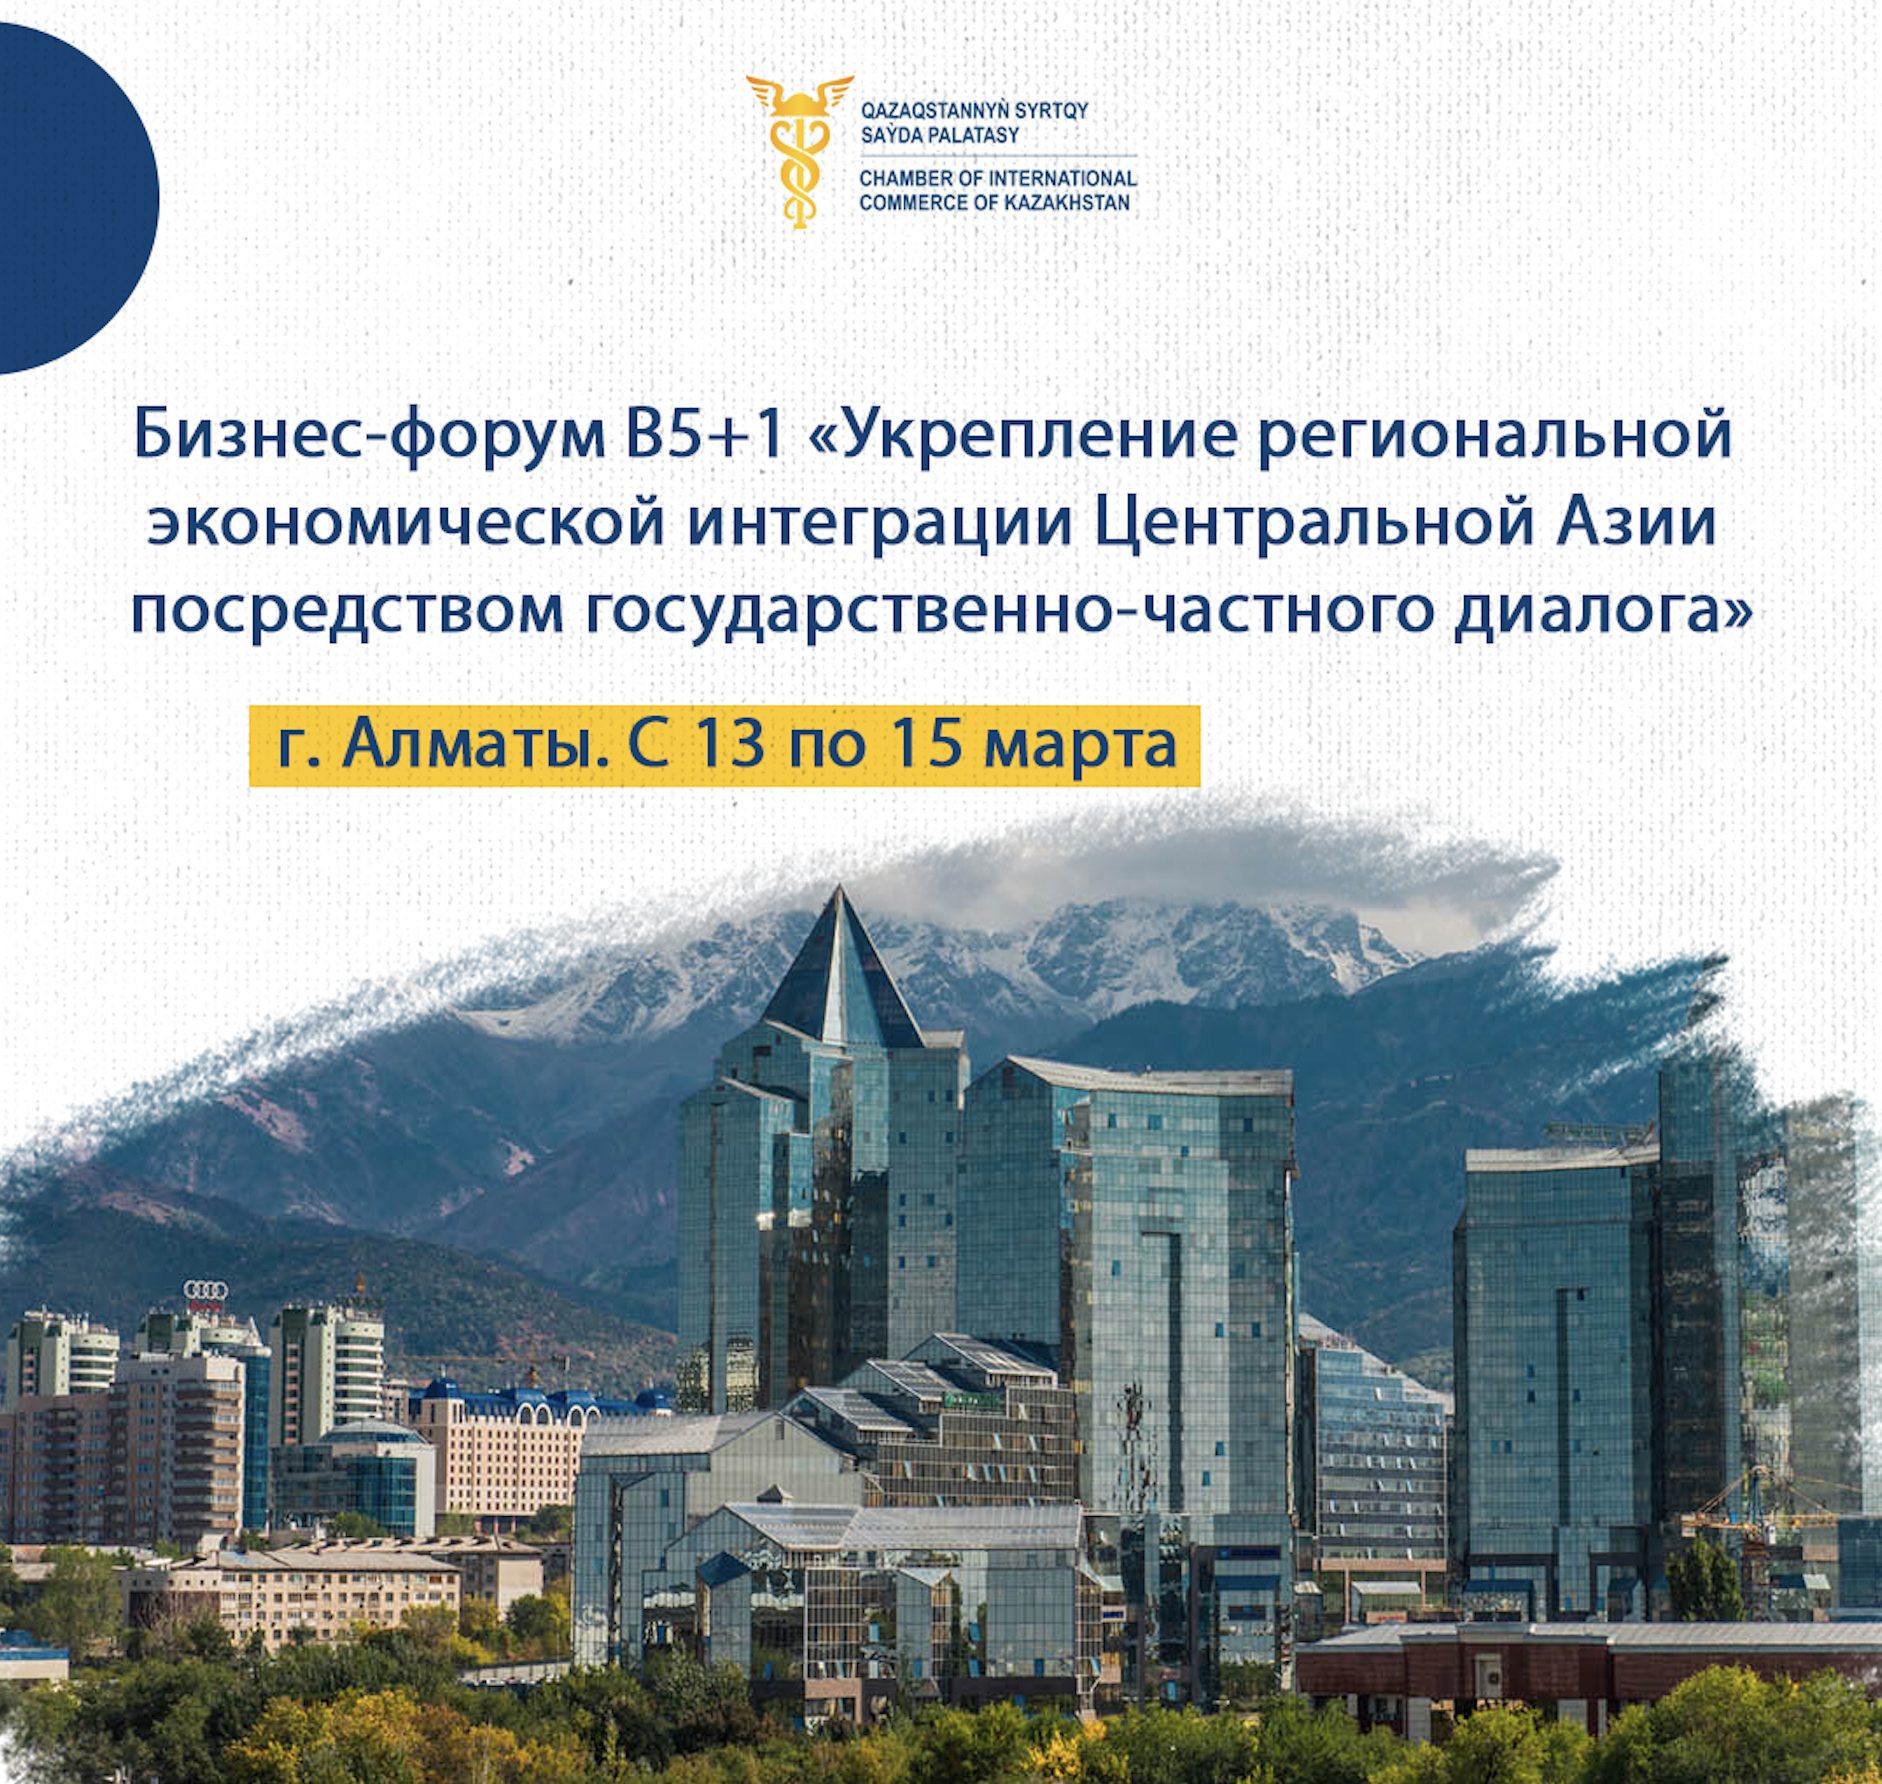 Бизнес-форум В5+1 «Укрепление региональной экономической интеграции Центральной Азии посредством государственно-частного диалога».